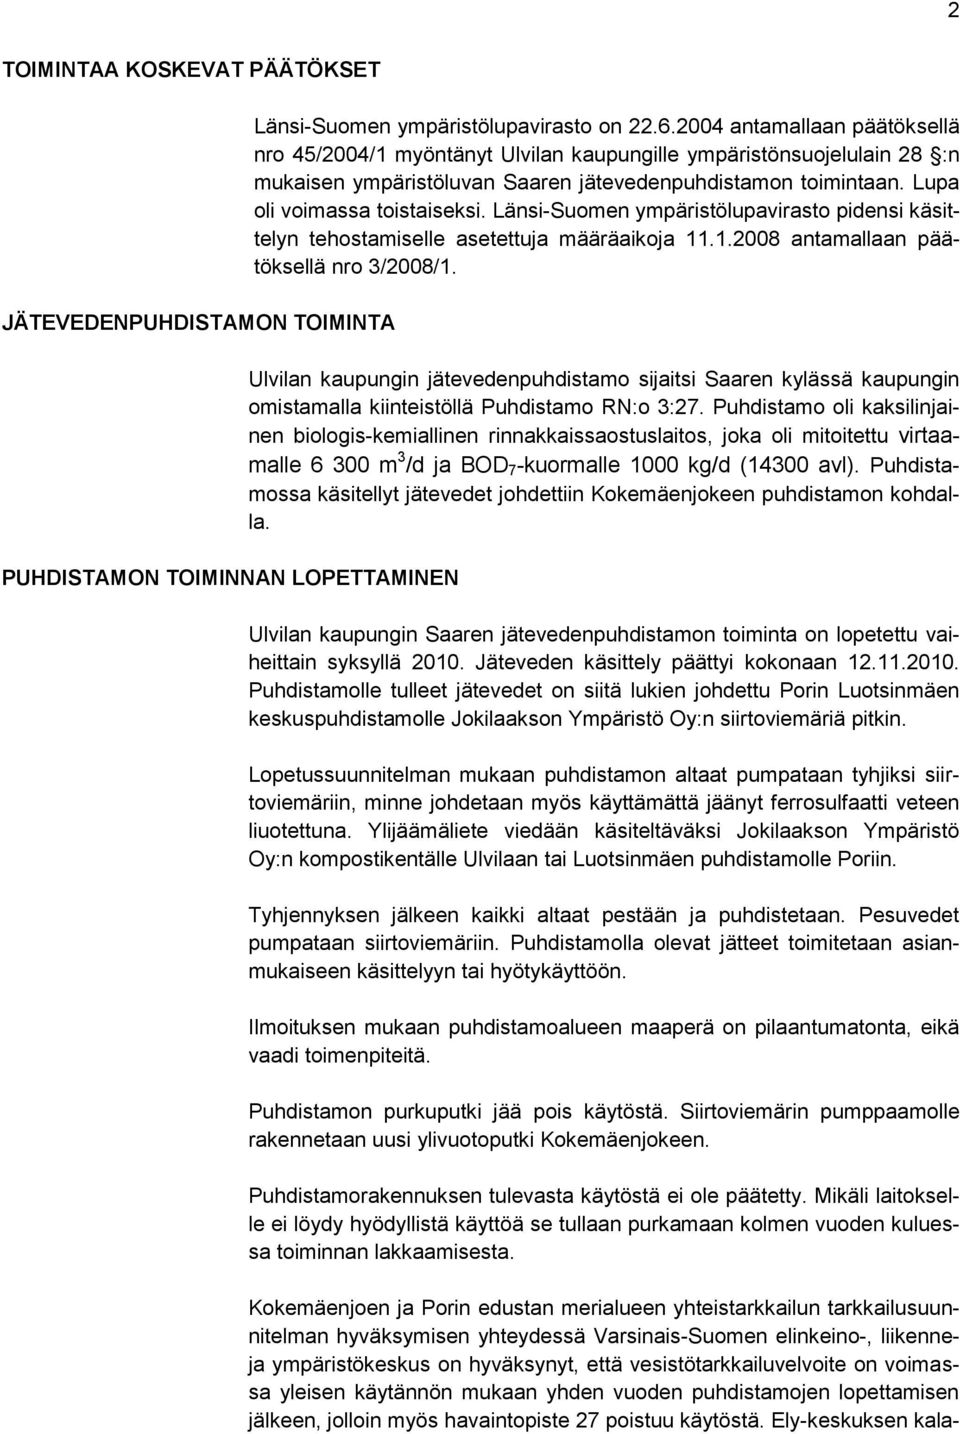 Länsi-Suomen ympäristölupavirasto pidensi käsittelyn tehostamiselle asetettuja määräaikoja 11.1.2008 antamallaan päätöksellä nro 3/2008/1.